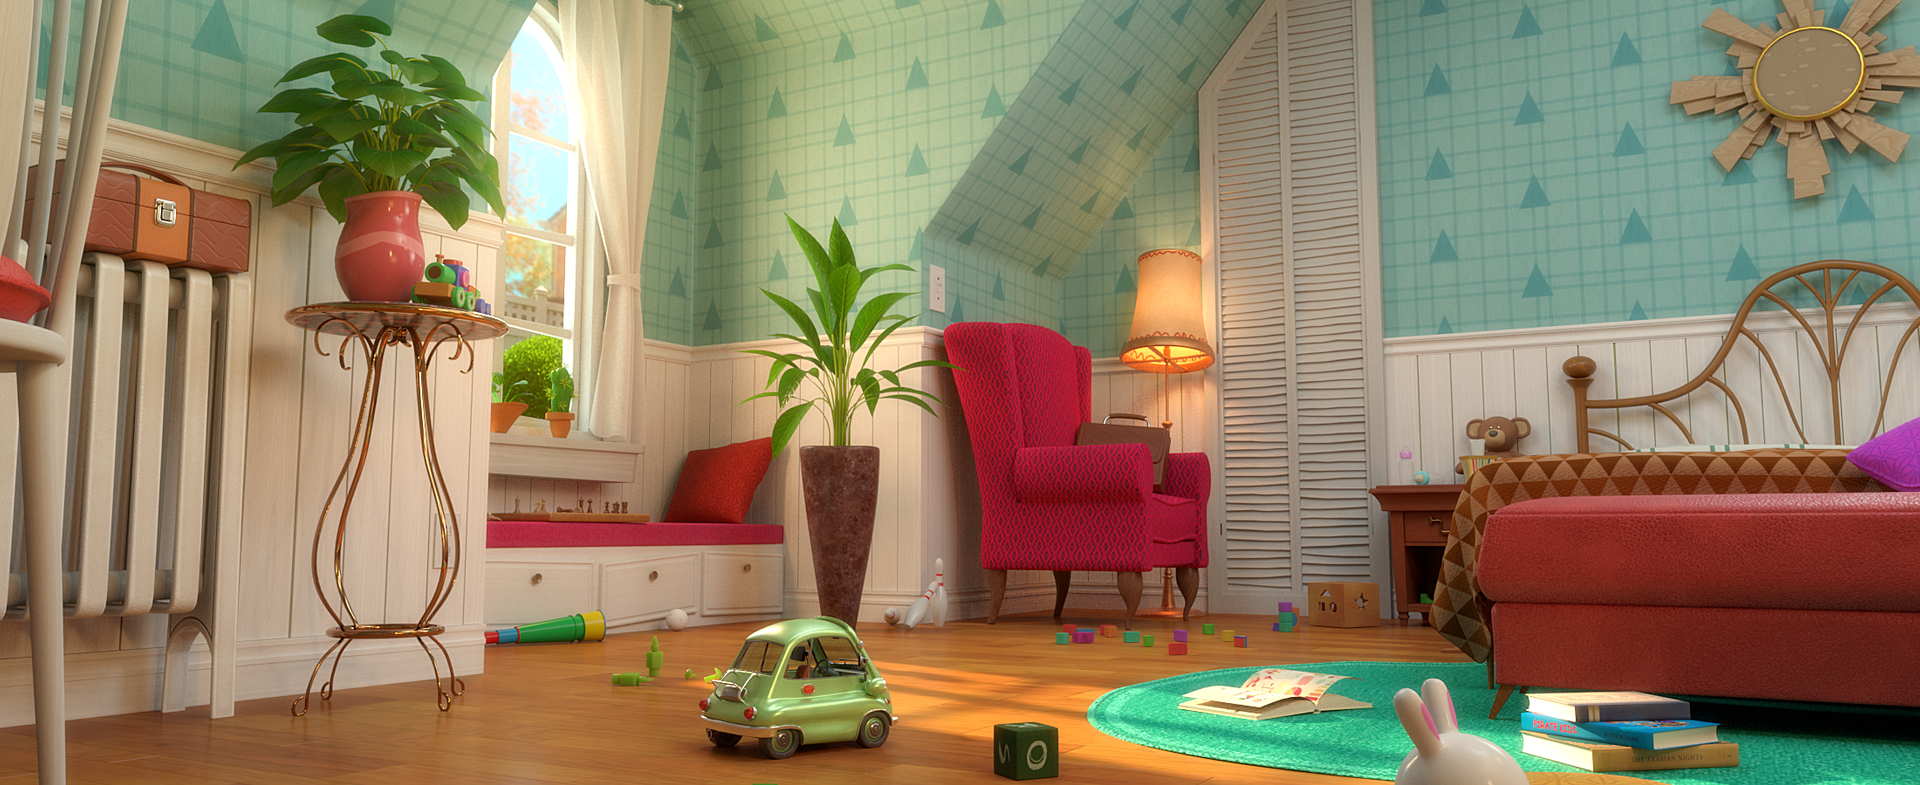 Cartoon Room Interior Full Version 3D 모델 - TurboSquid 1682518